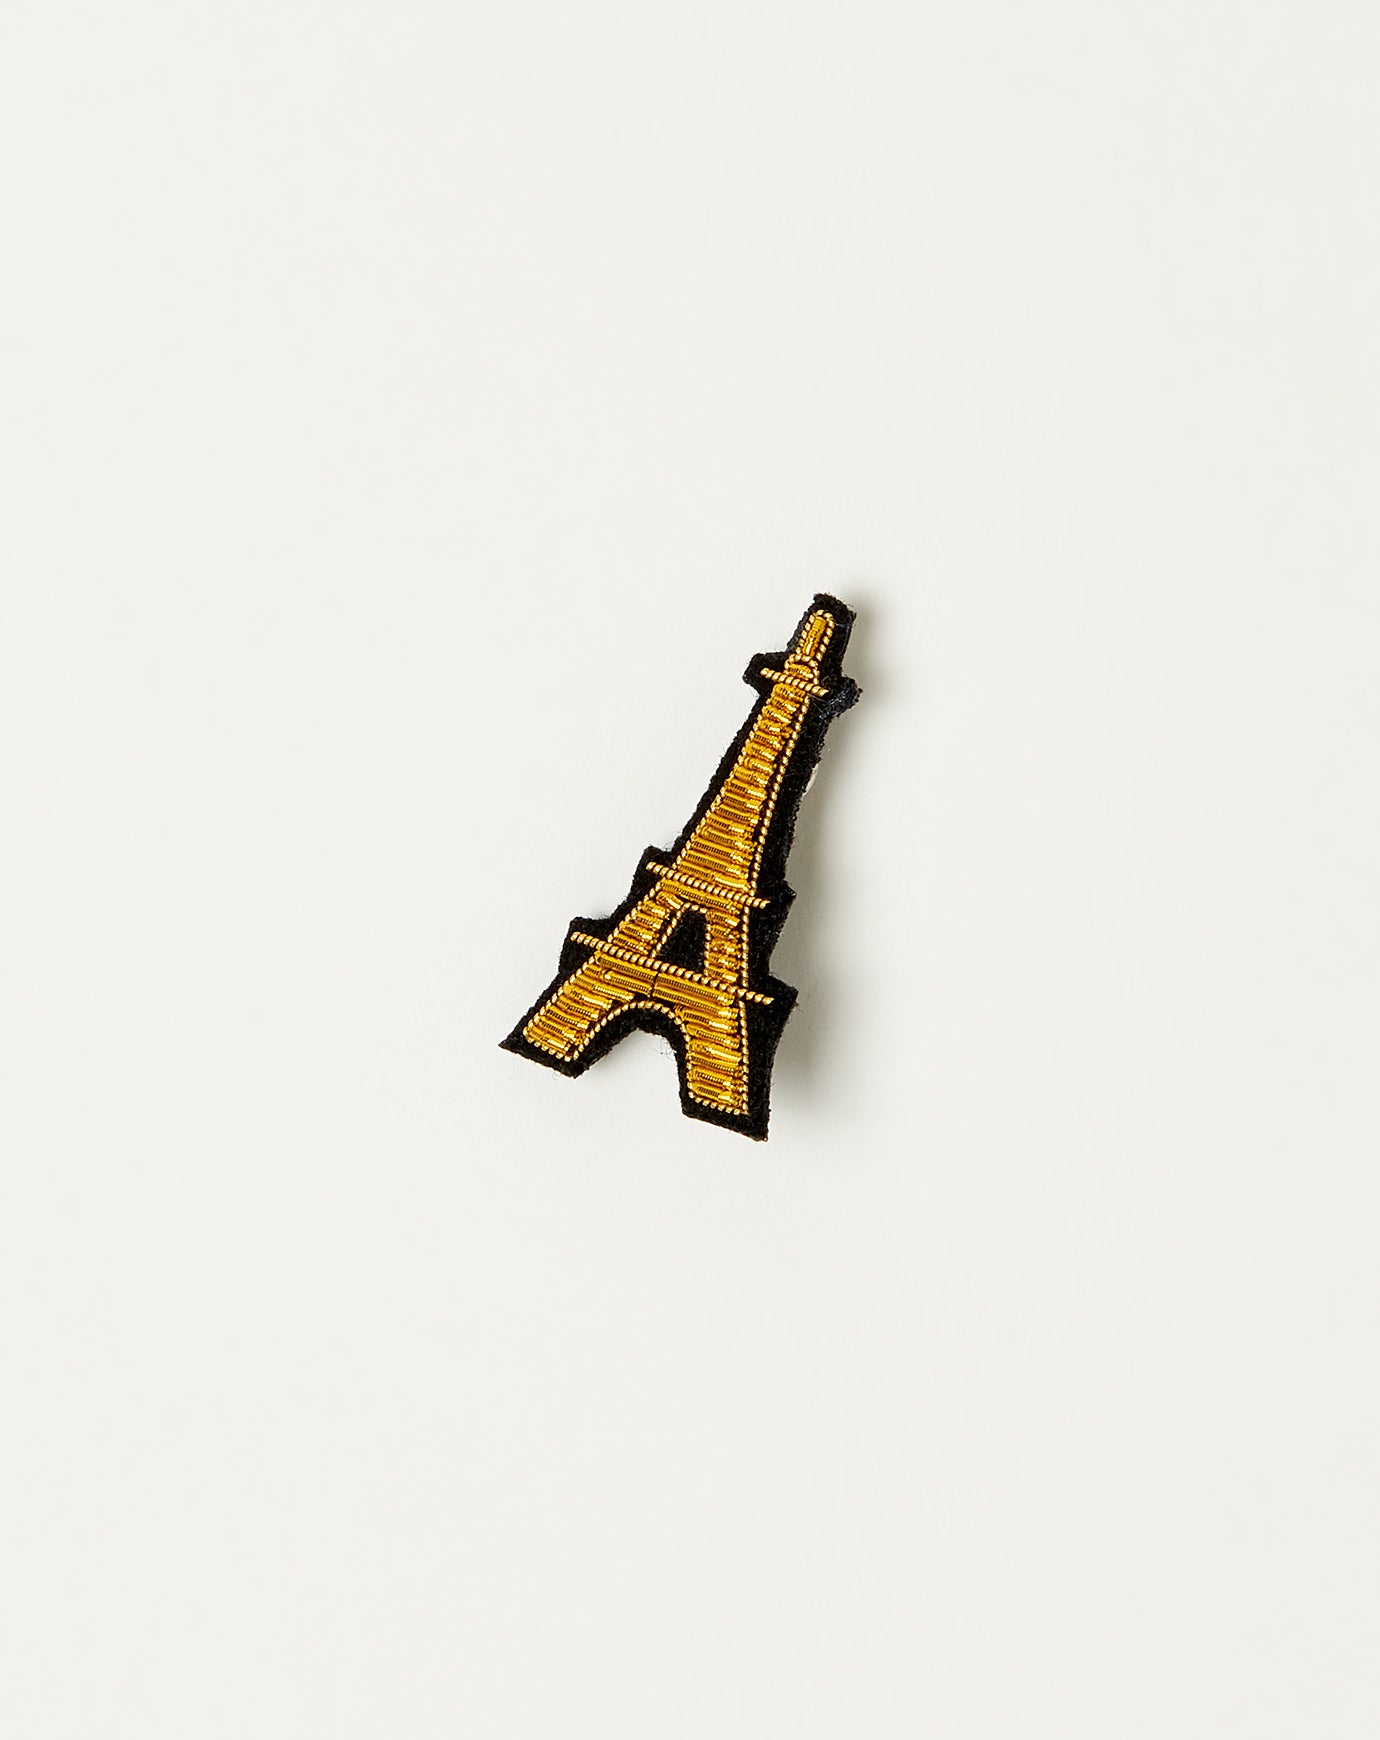 Macon Et Lesquoy Eiffel Tower Pin